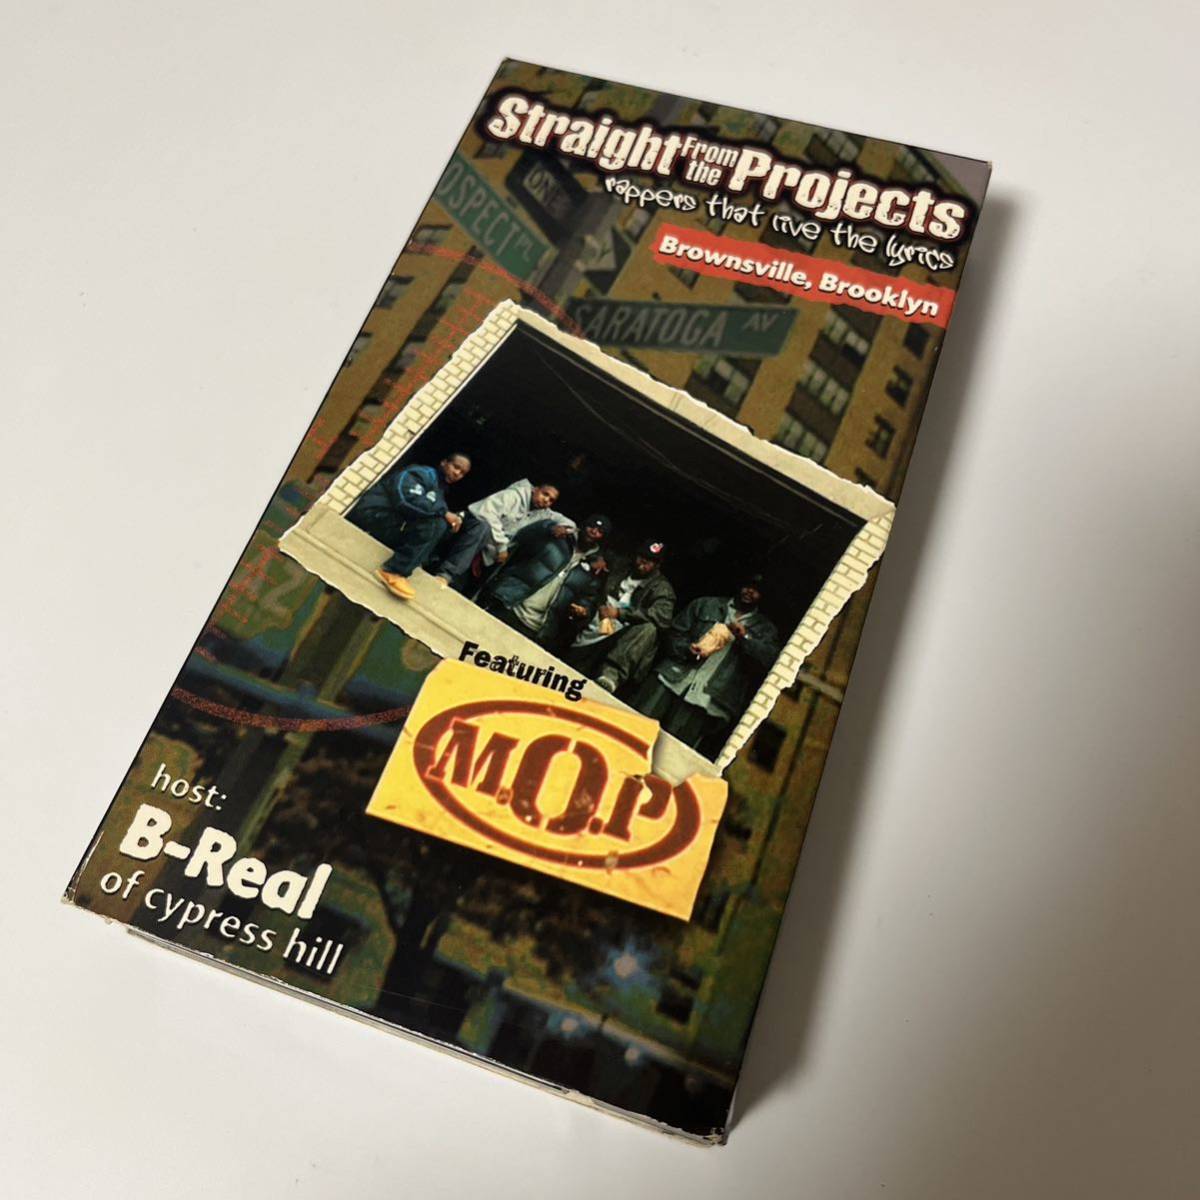 クリスマス特集2022 激レア VHS M.O.P - Straight From The Projects rappers that live the lyrics Brownsville Brooklyn host by B-Real of cypress hill ラップ、ヒップホップ